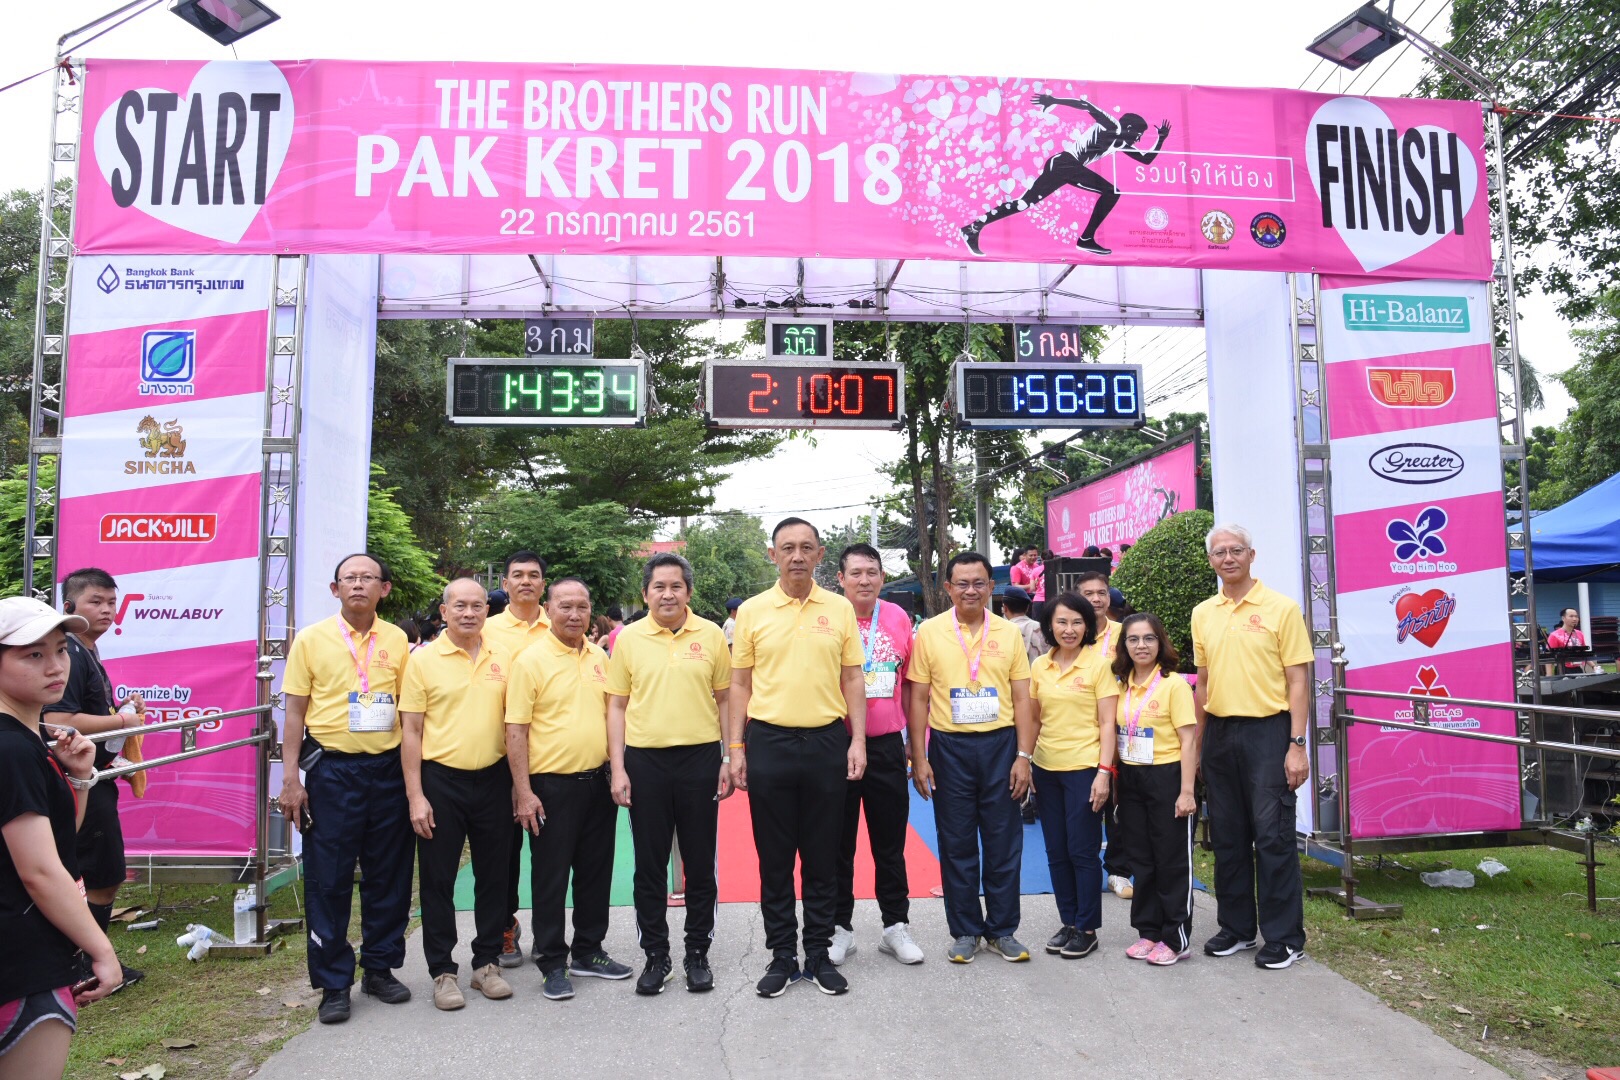 พม. จัดกิจกรรมวิ่งการกุศล  “The Brothers Run Pakkred รวมใจให้น้อง”ครั้งที่ 1